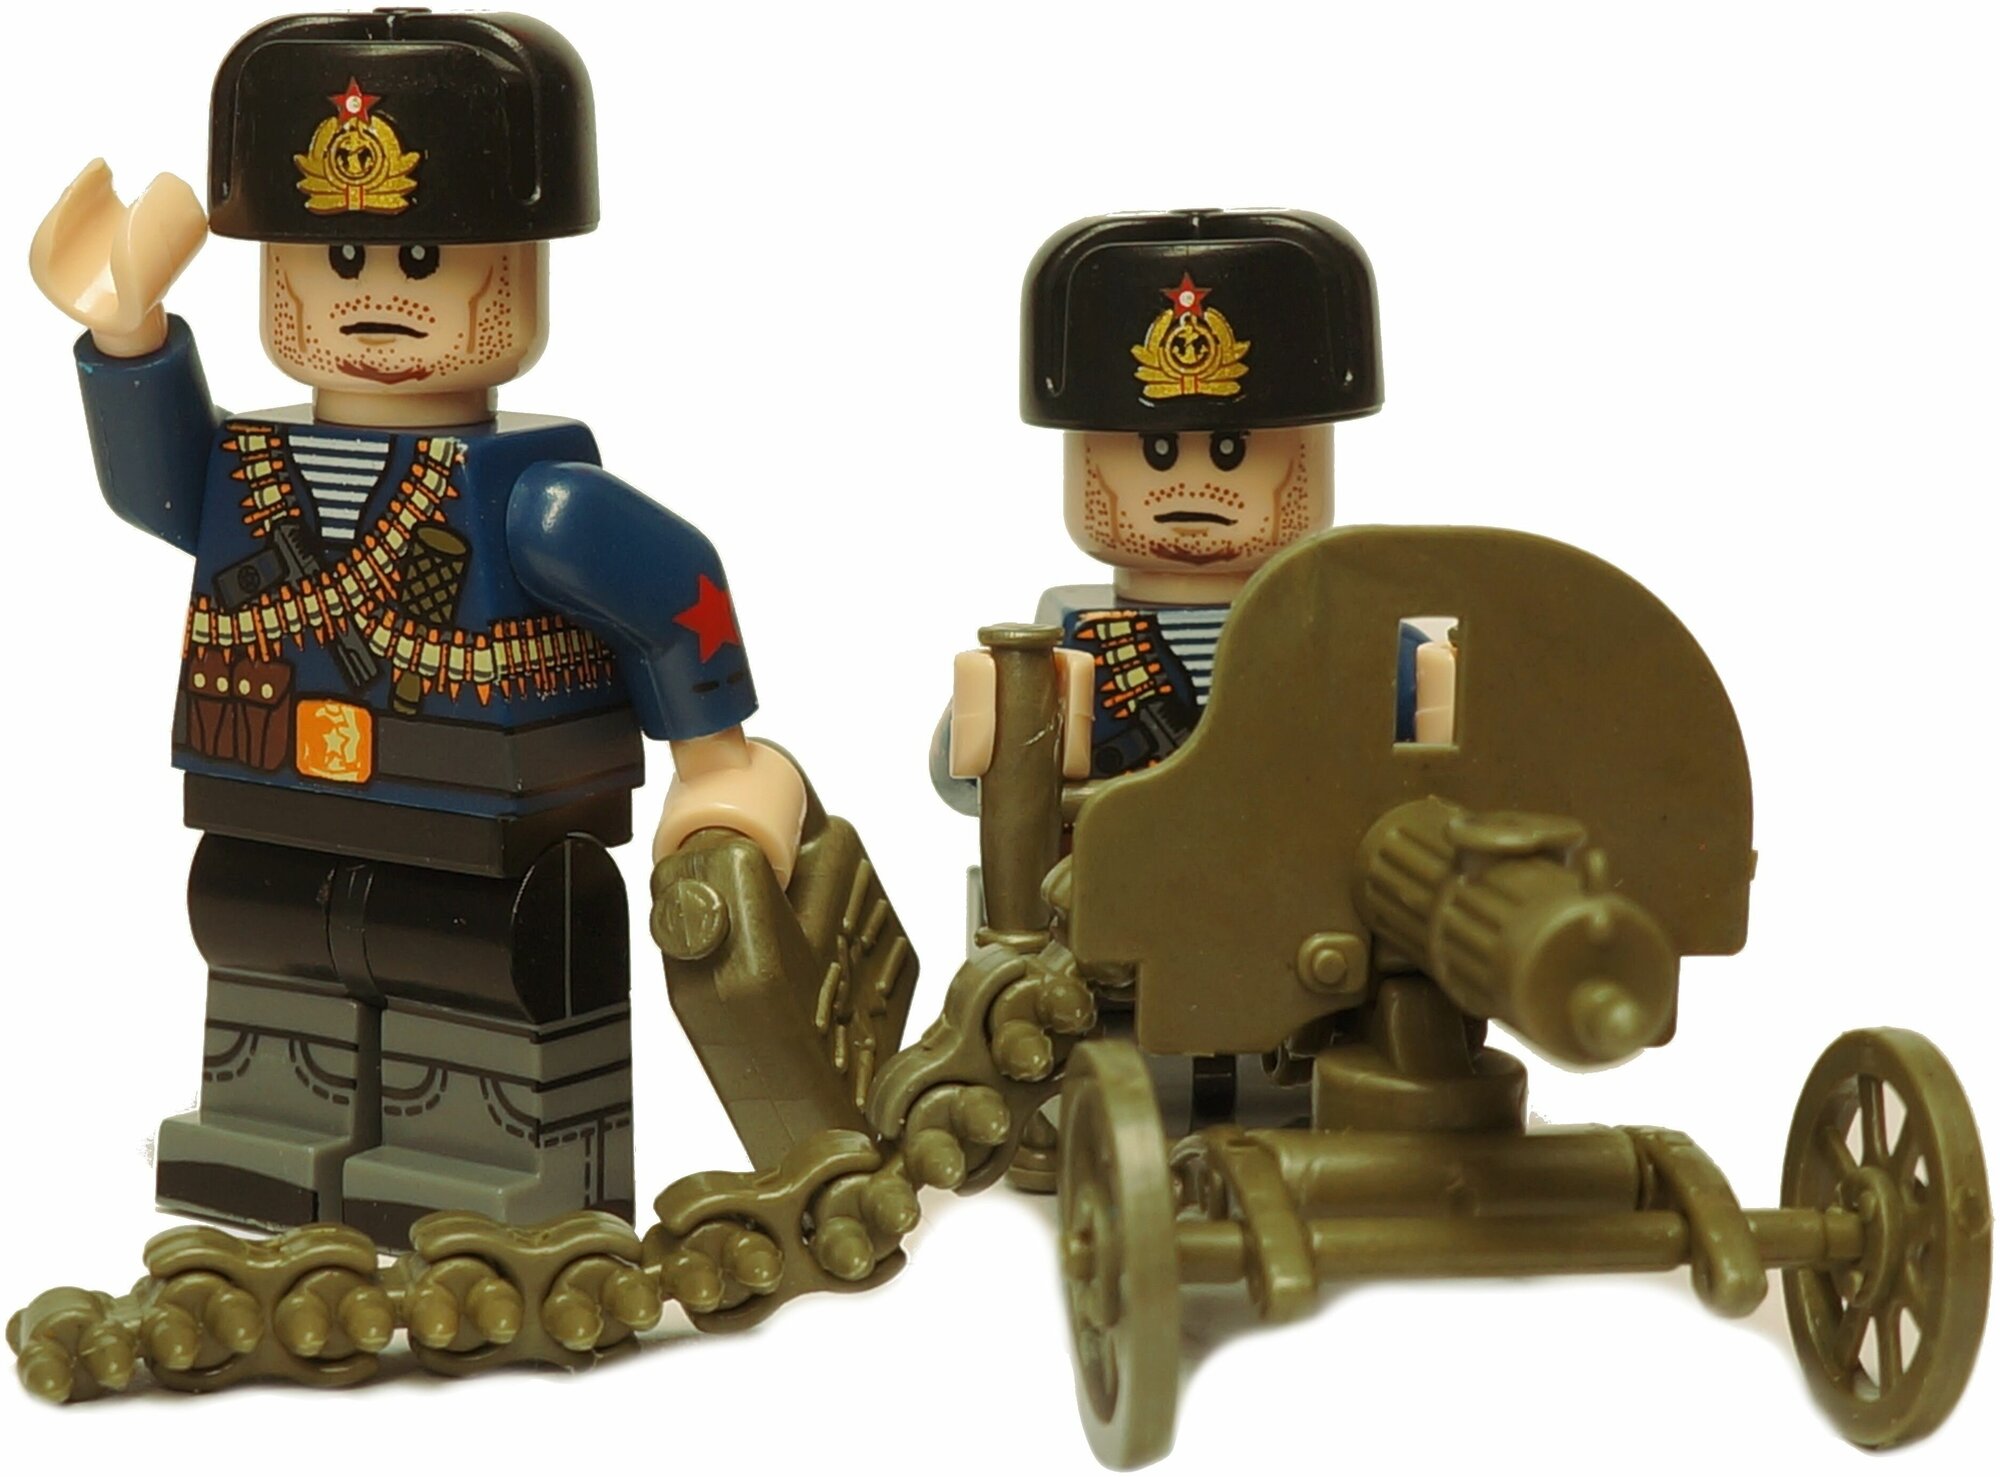 Конструктор Вторая мировая война, набор военных человечков 2 фигурки с пулеметом Максим / солдатики и армия совместимая с Лего